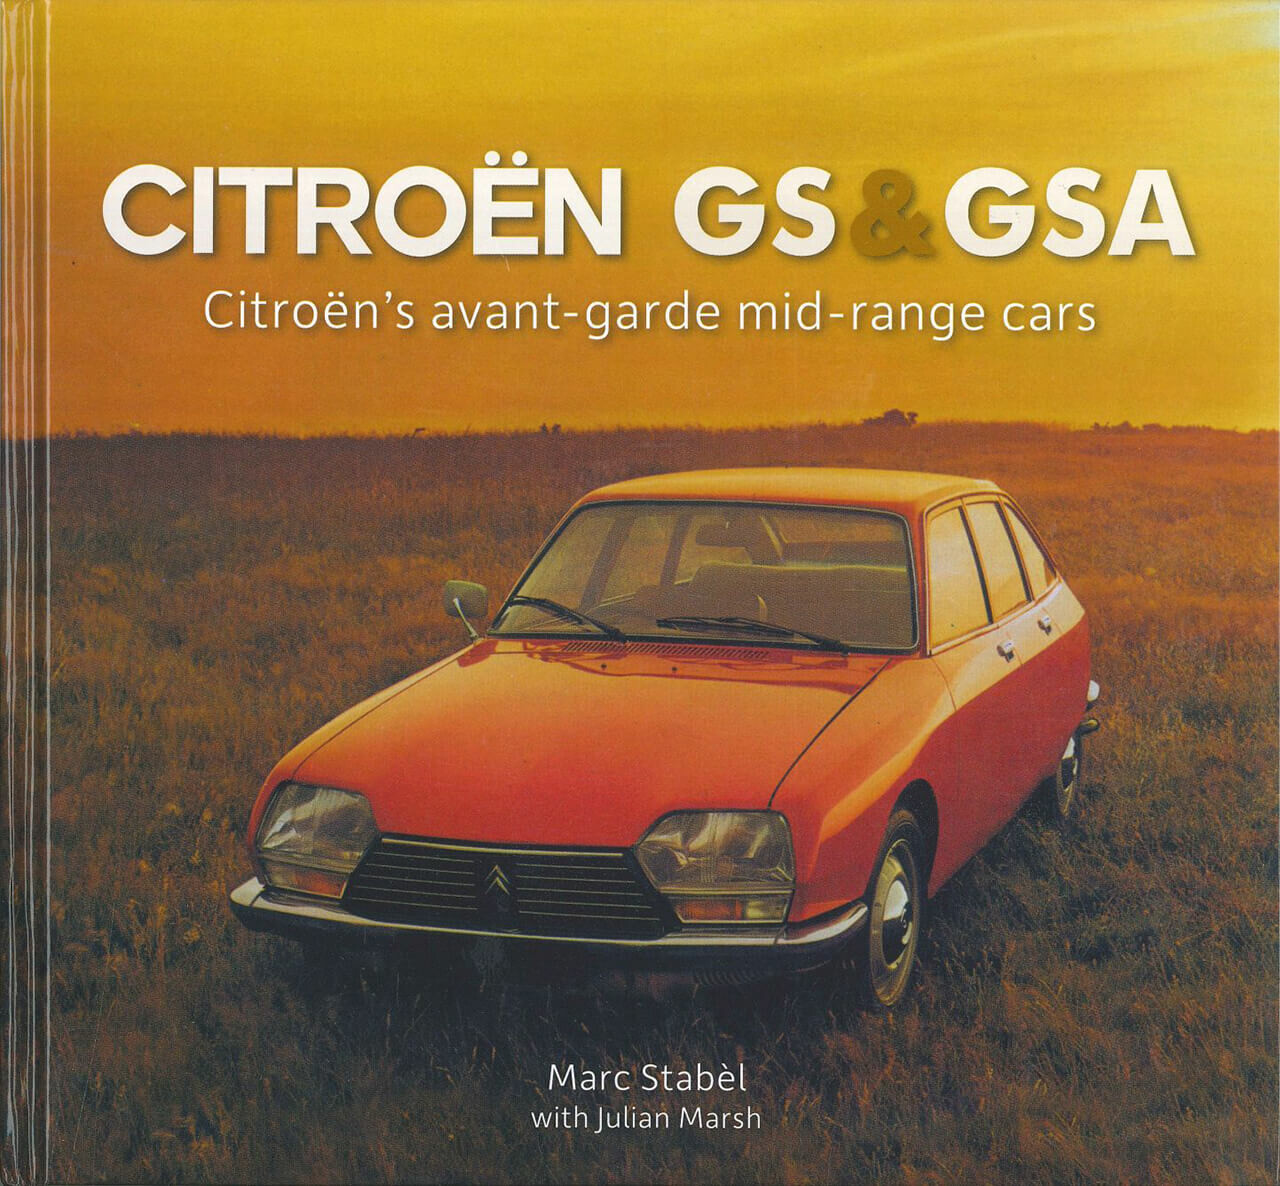 シトロエン「GS」と「GSA」のクレーモデルやプロトタイプ、商用車までをも含めた貴重な写真資料集【新書紹介】